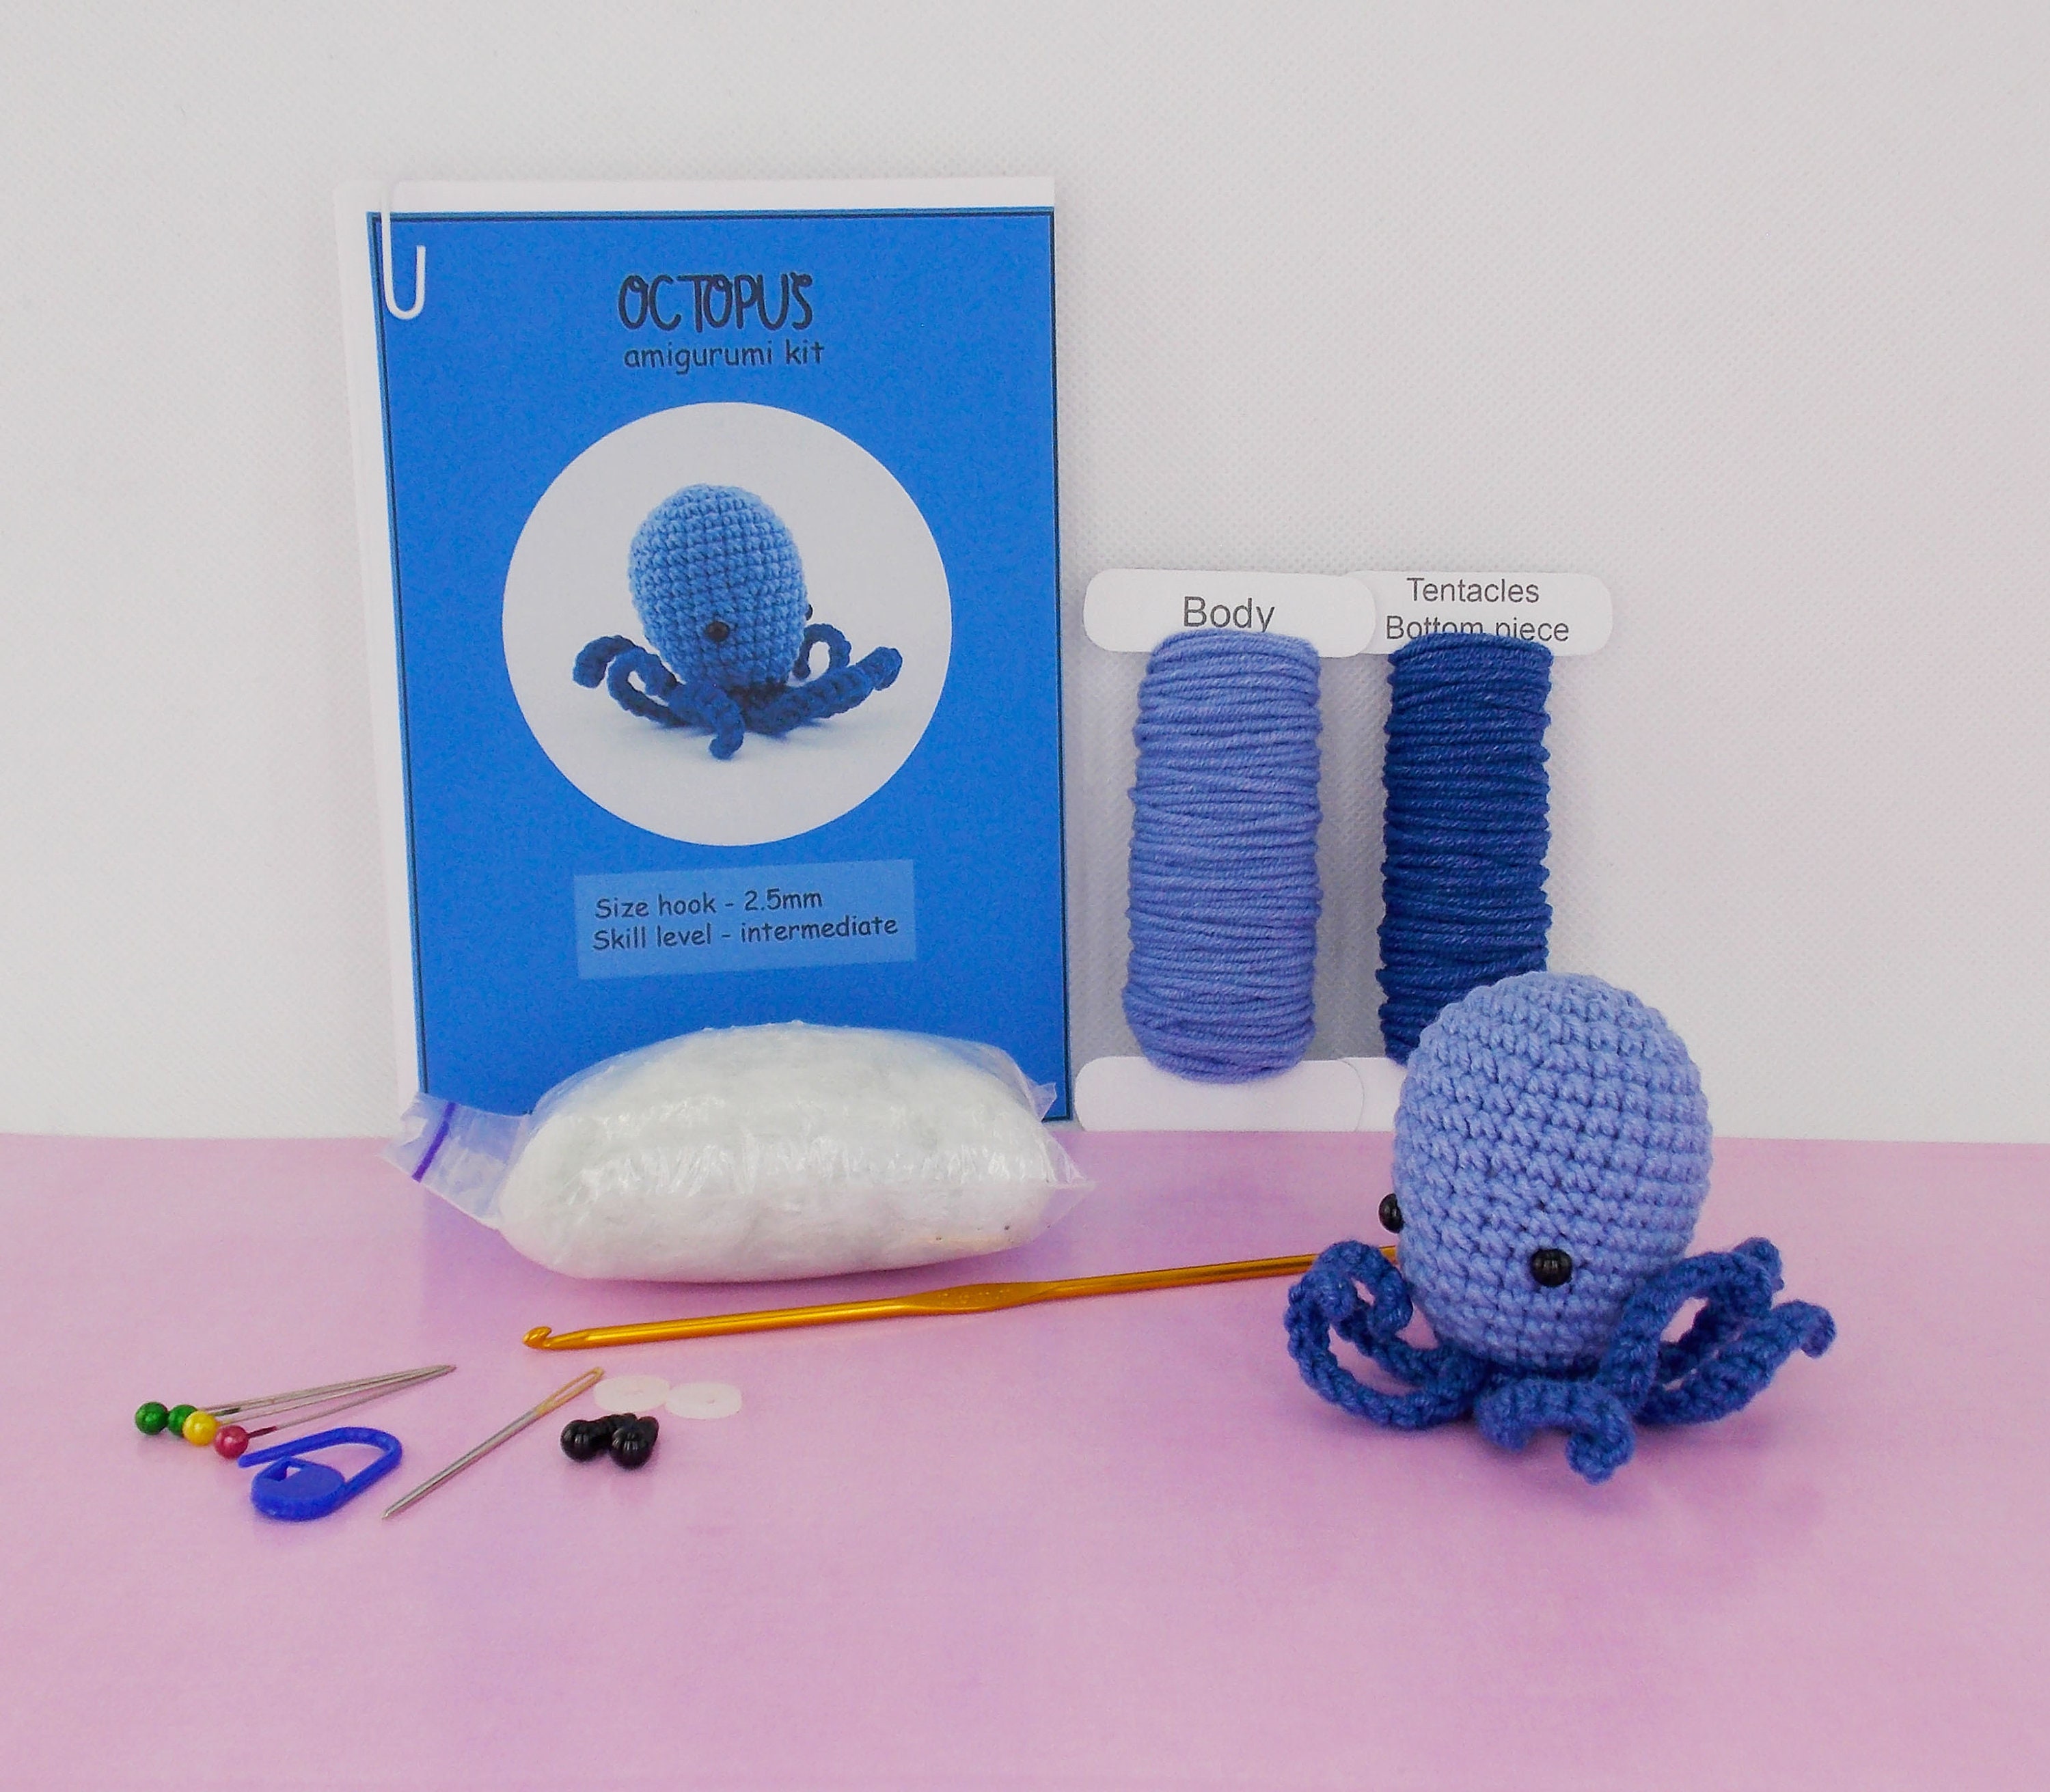 Sport Guy Store Crochet Kit for Beginners Small Octopus Crochet Knitting  Kit Adorable Animal Crochet Starter Pack with 5 Colors Thread Crochet Kit  Crochet Starter Pack for Kids